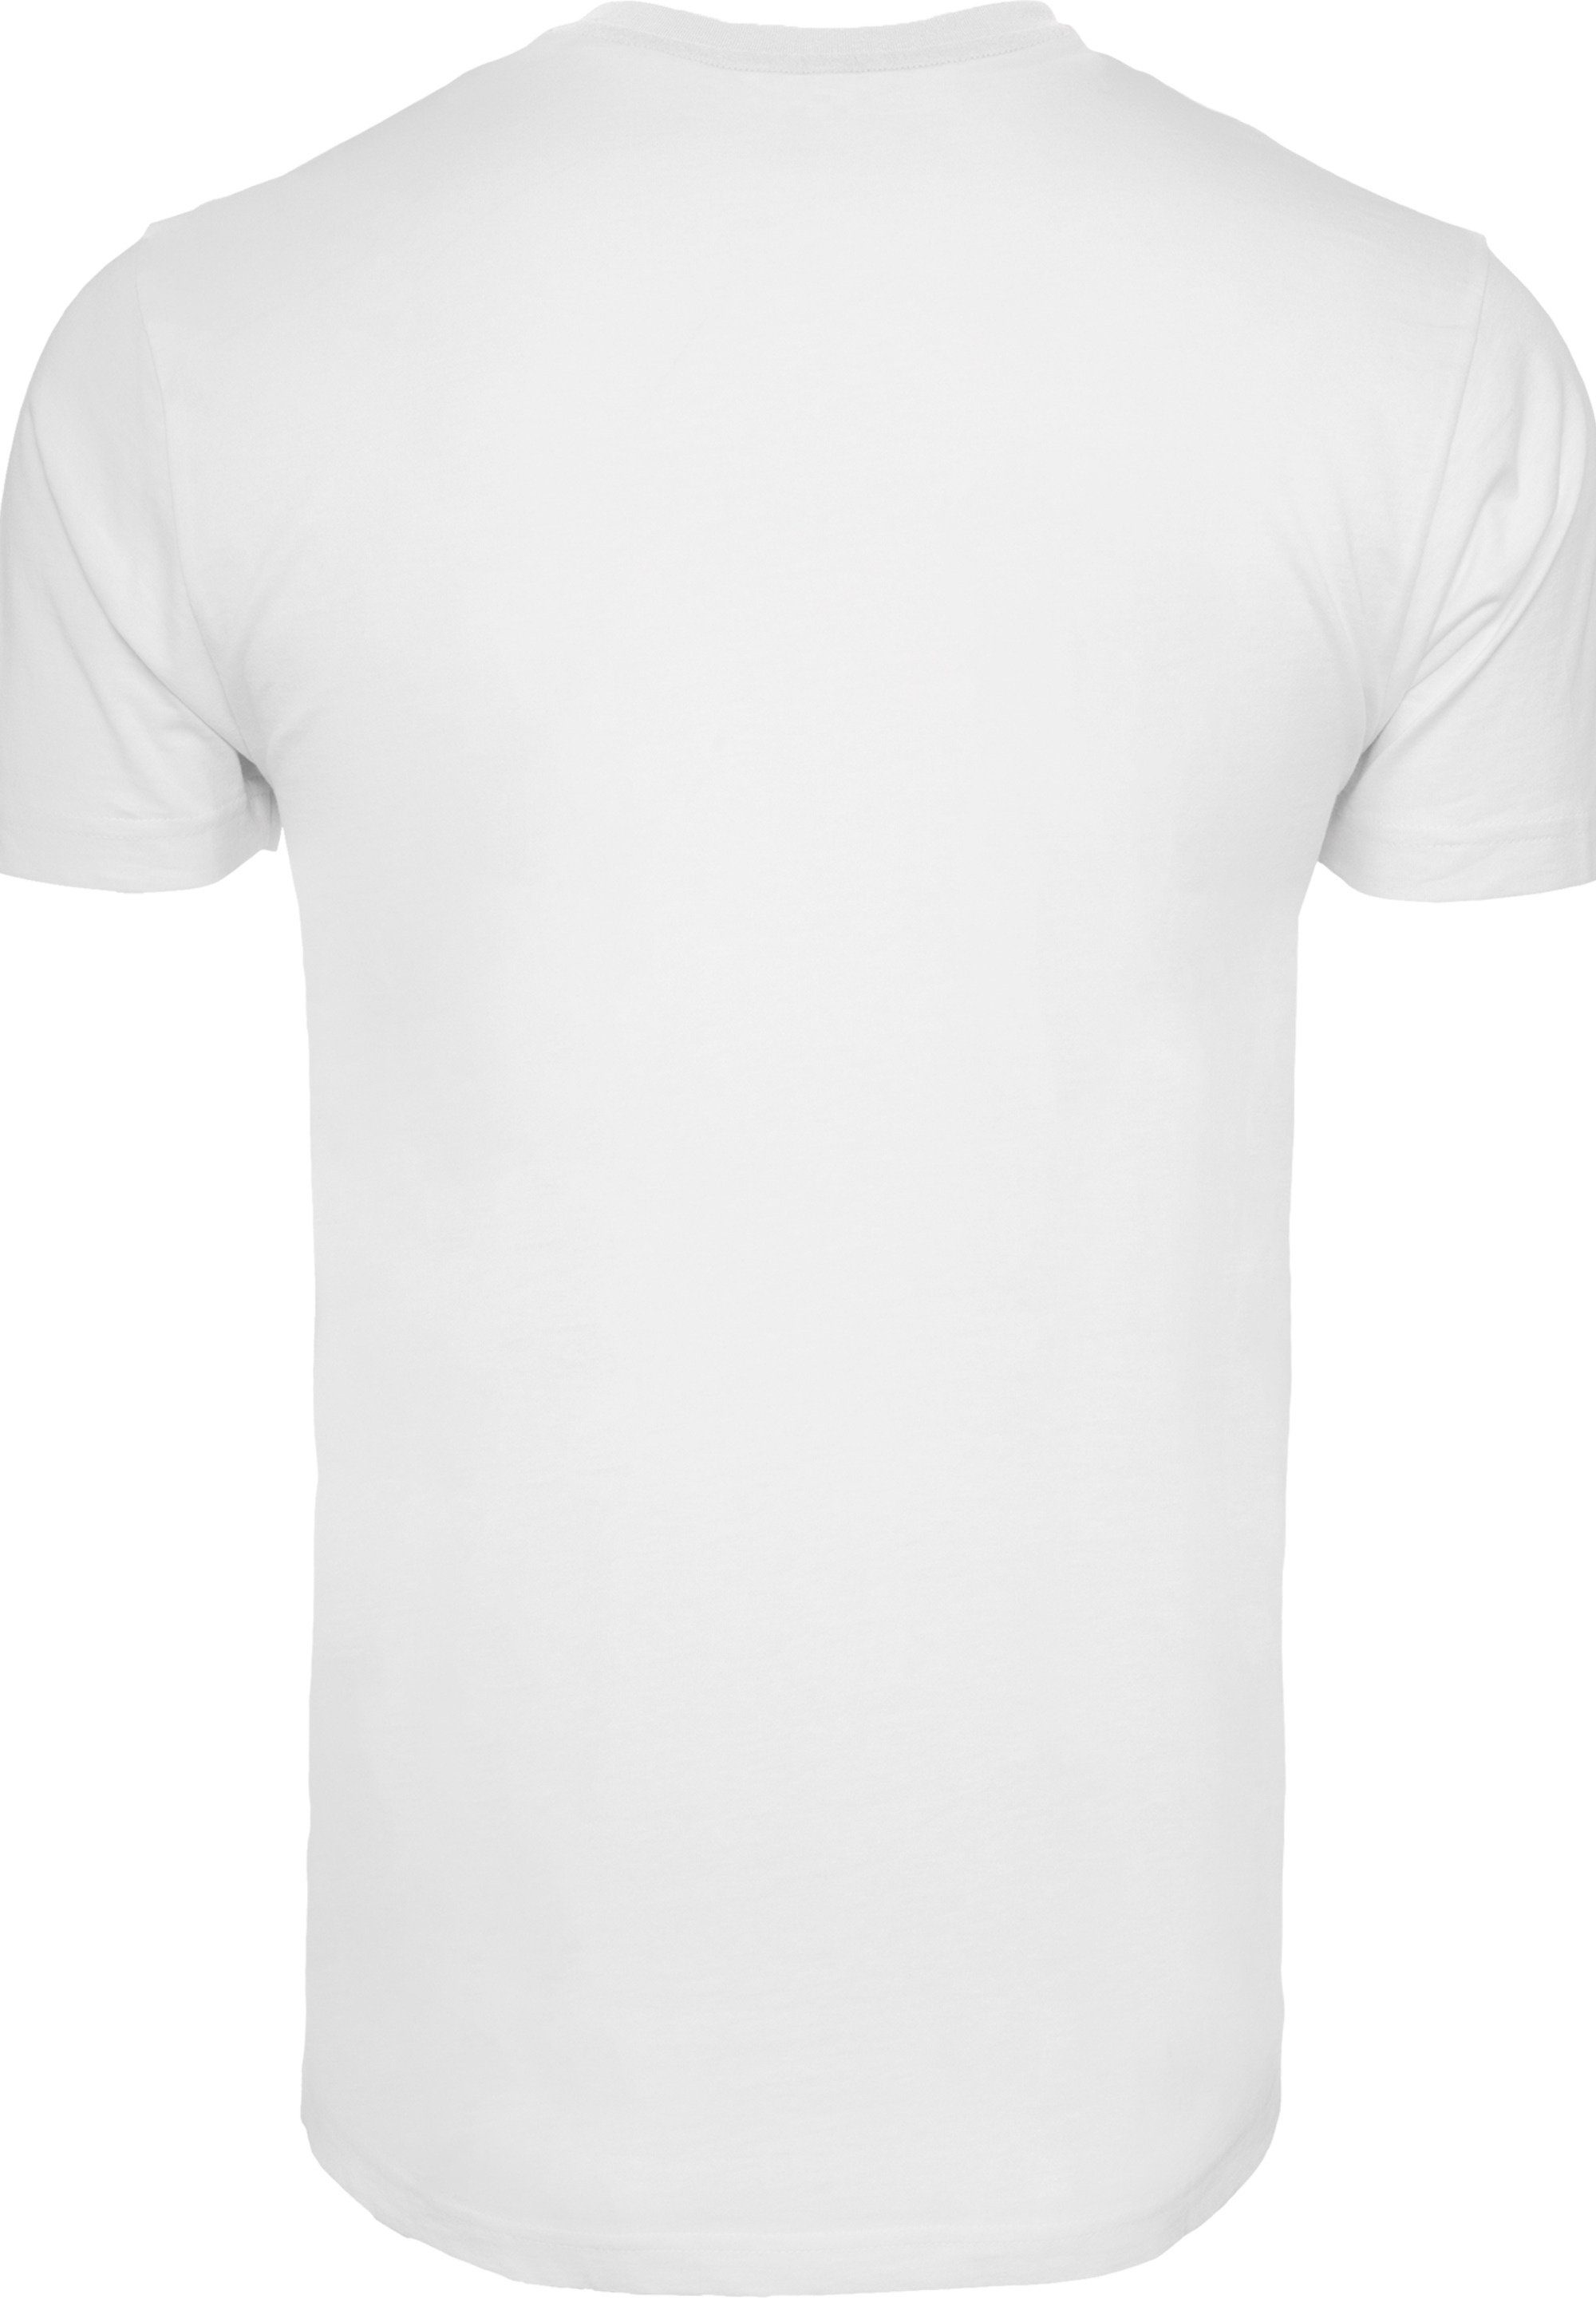 weiß Herren,Premium Merch,Regular-Fit,Basic,Bedruckt Disney T-Shirt der Löwen Hakuna F4NT4STIC Matata König